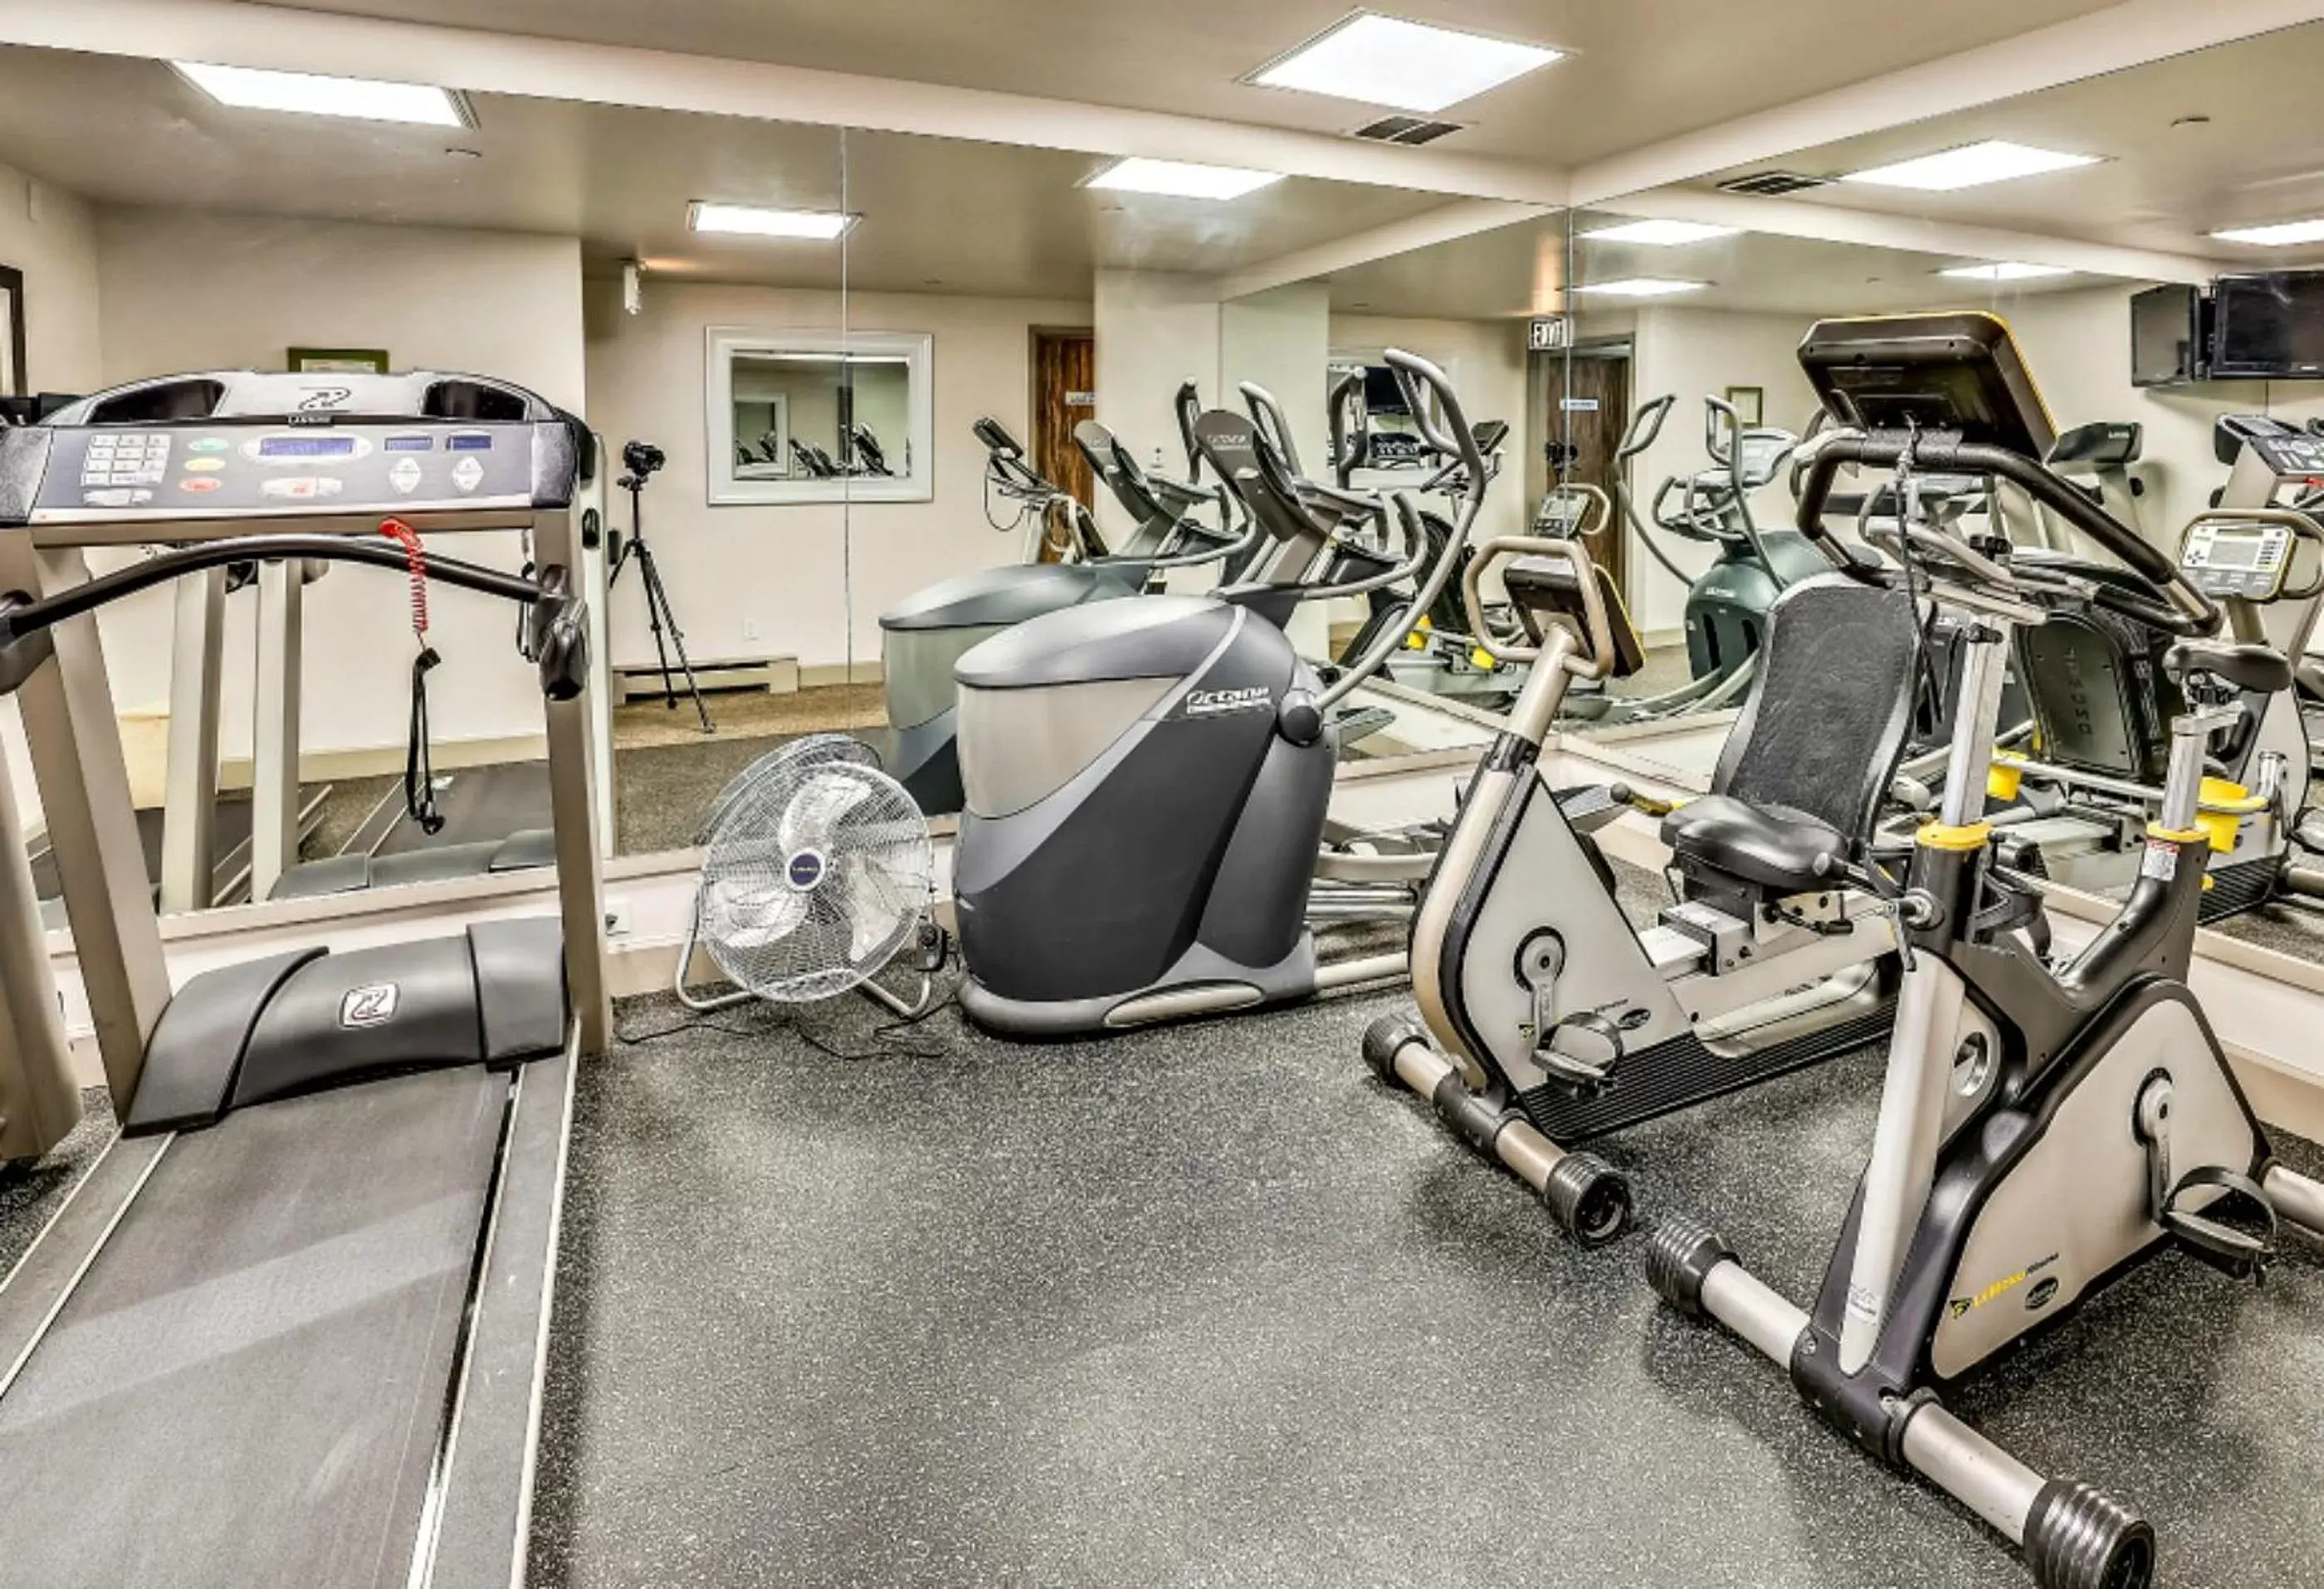 Fitness centre/facilities, Fitness Center/Facilities in Aspen Square Condominium Hotel